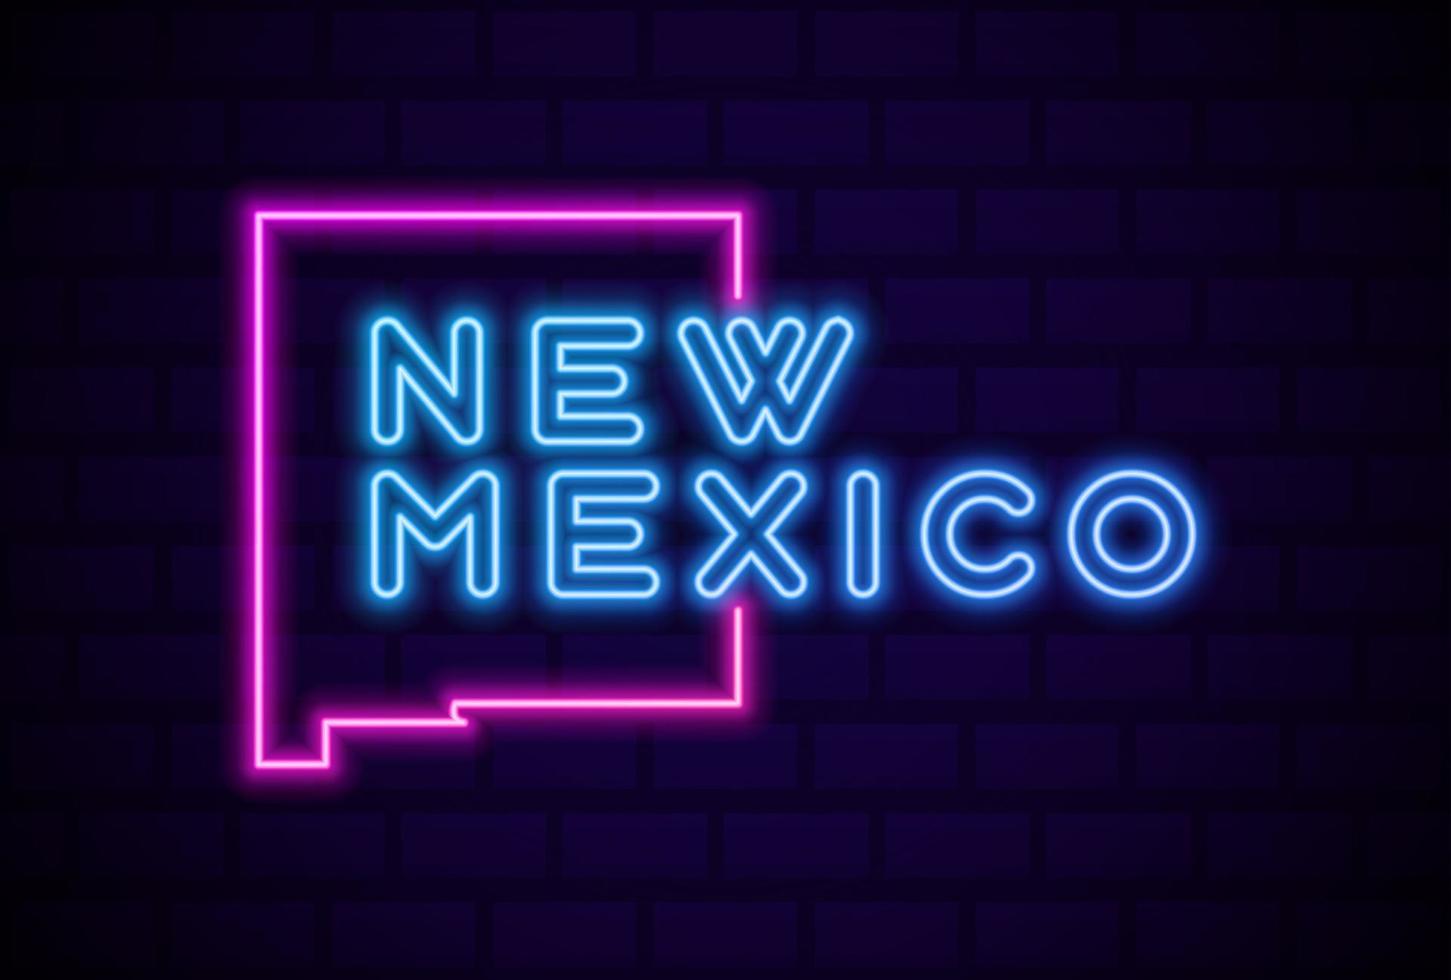 New Mexico VS staat gloeiende neon lamp teken realistische vector illustratie blauwe bakstenen muur gloed